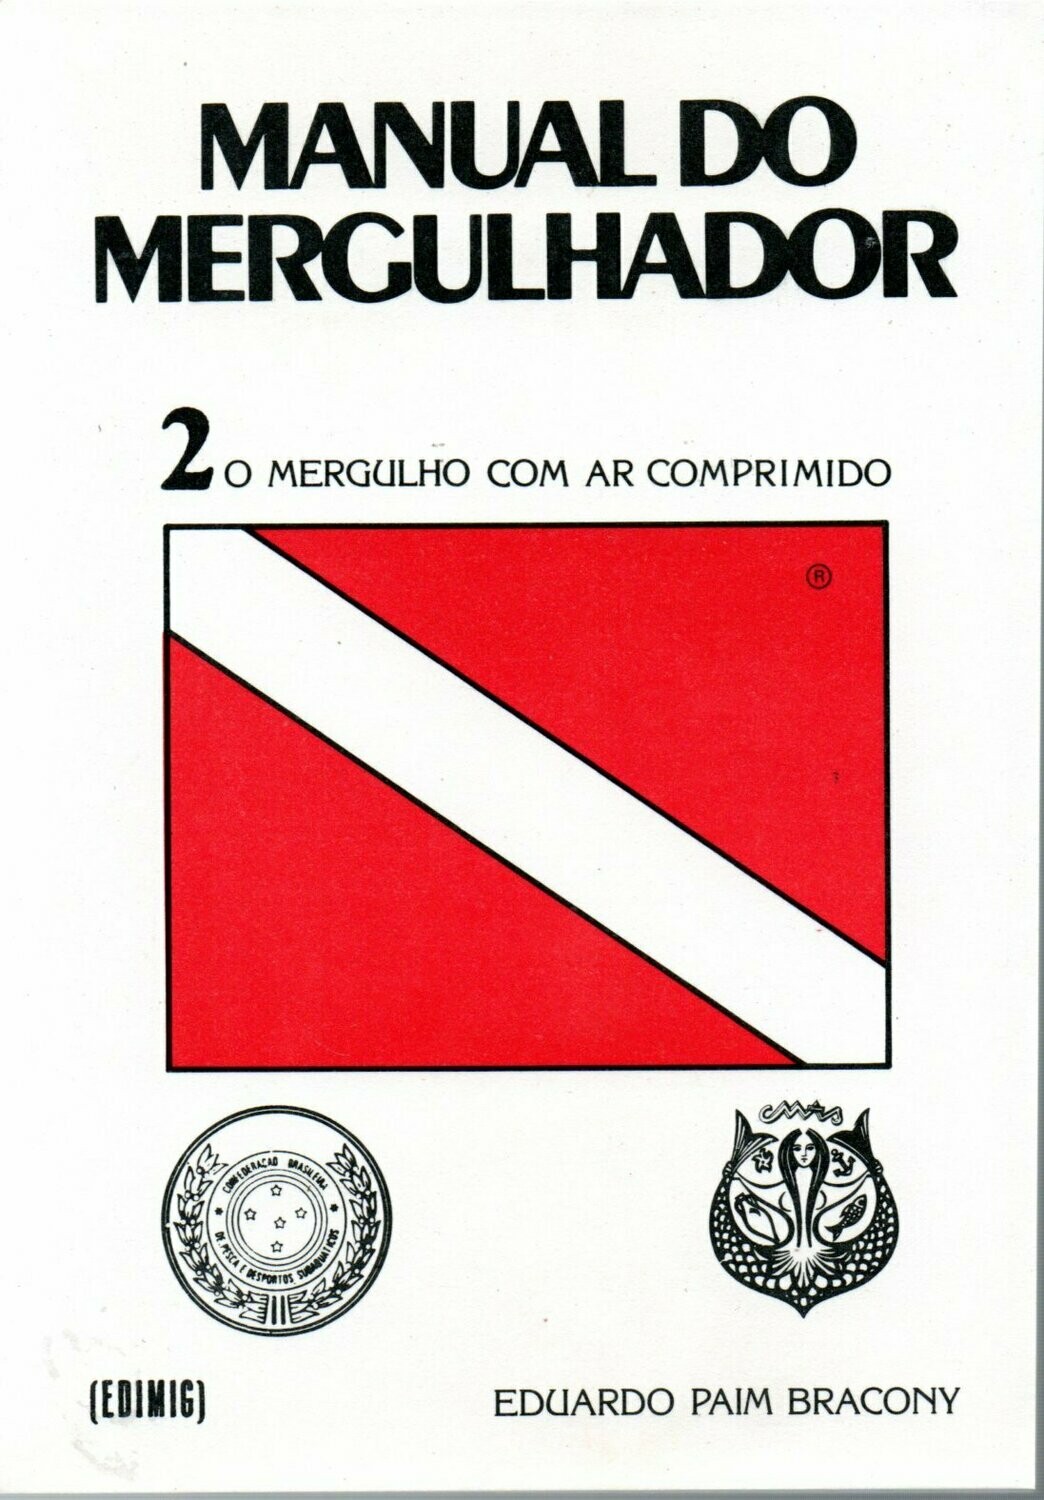 MANUAL DO MERGULHADOR
VOLUME 2